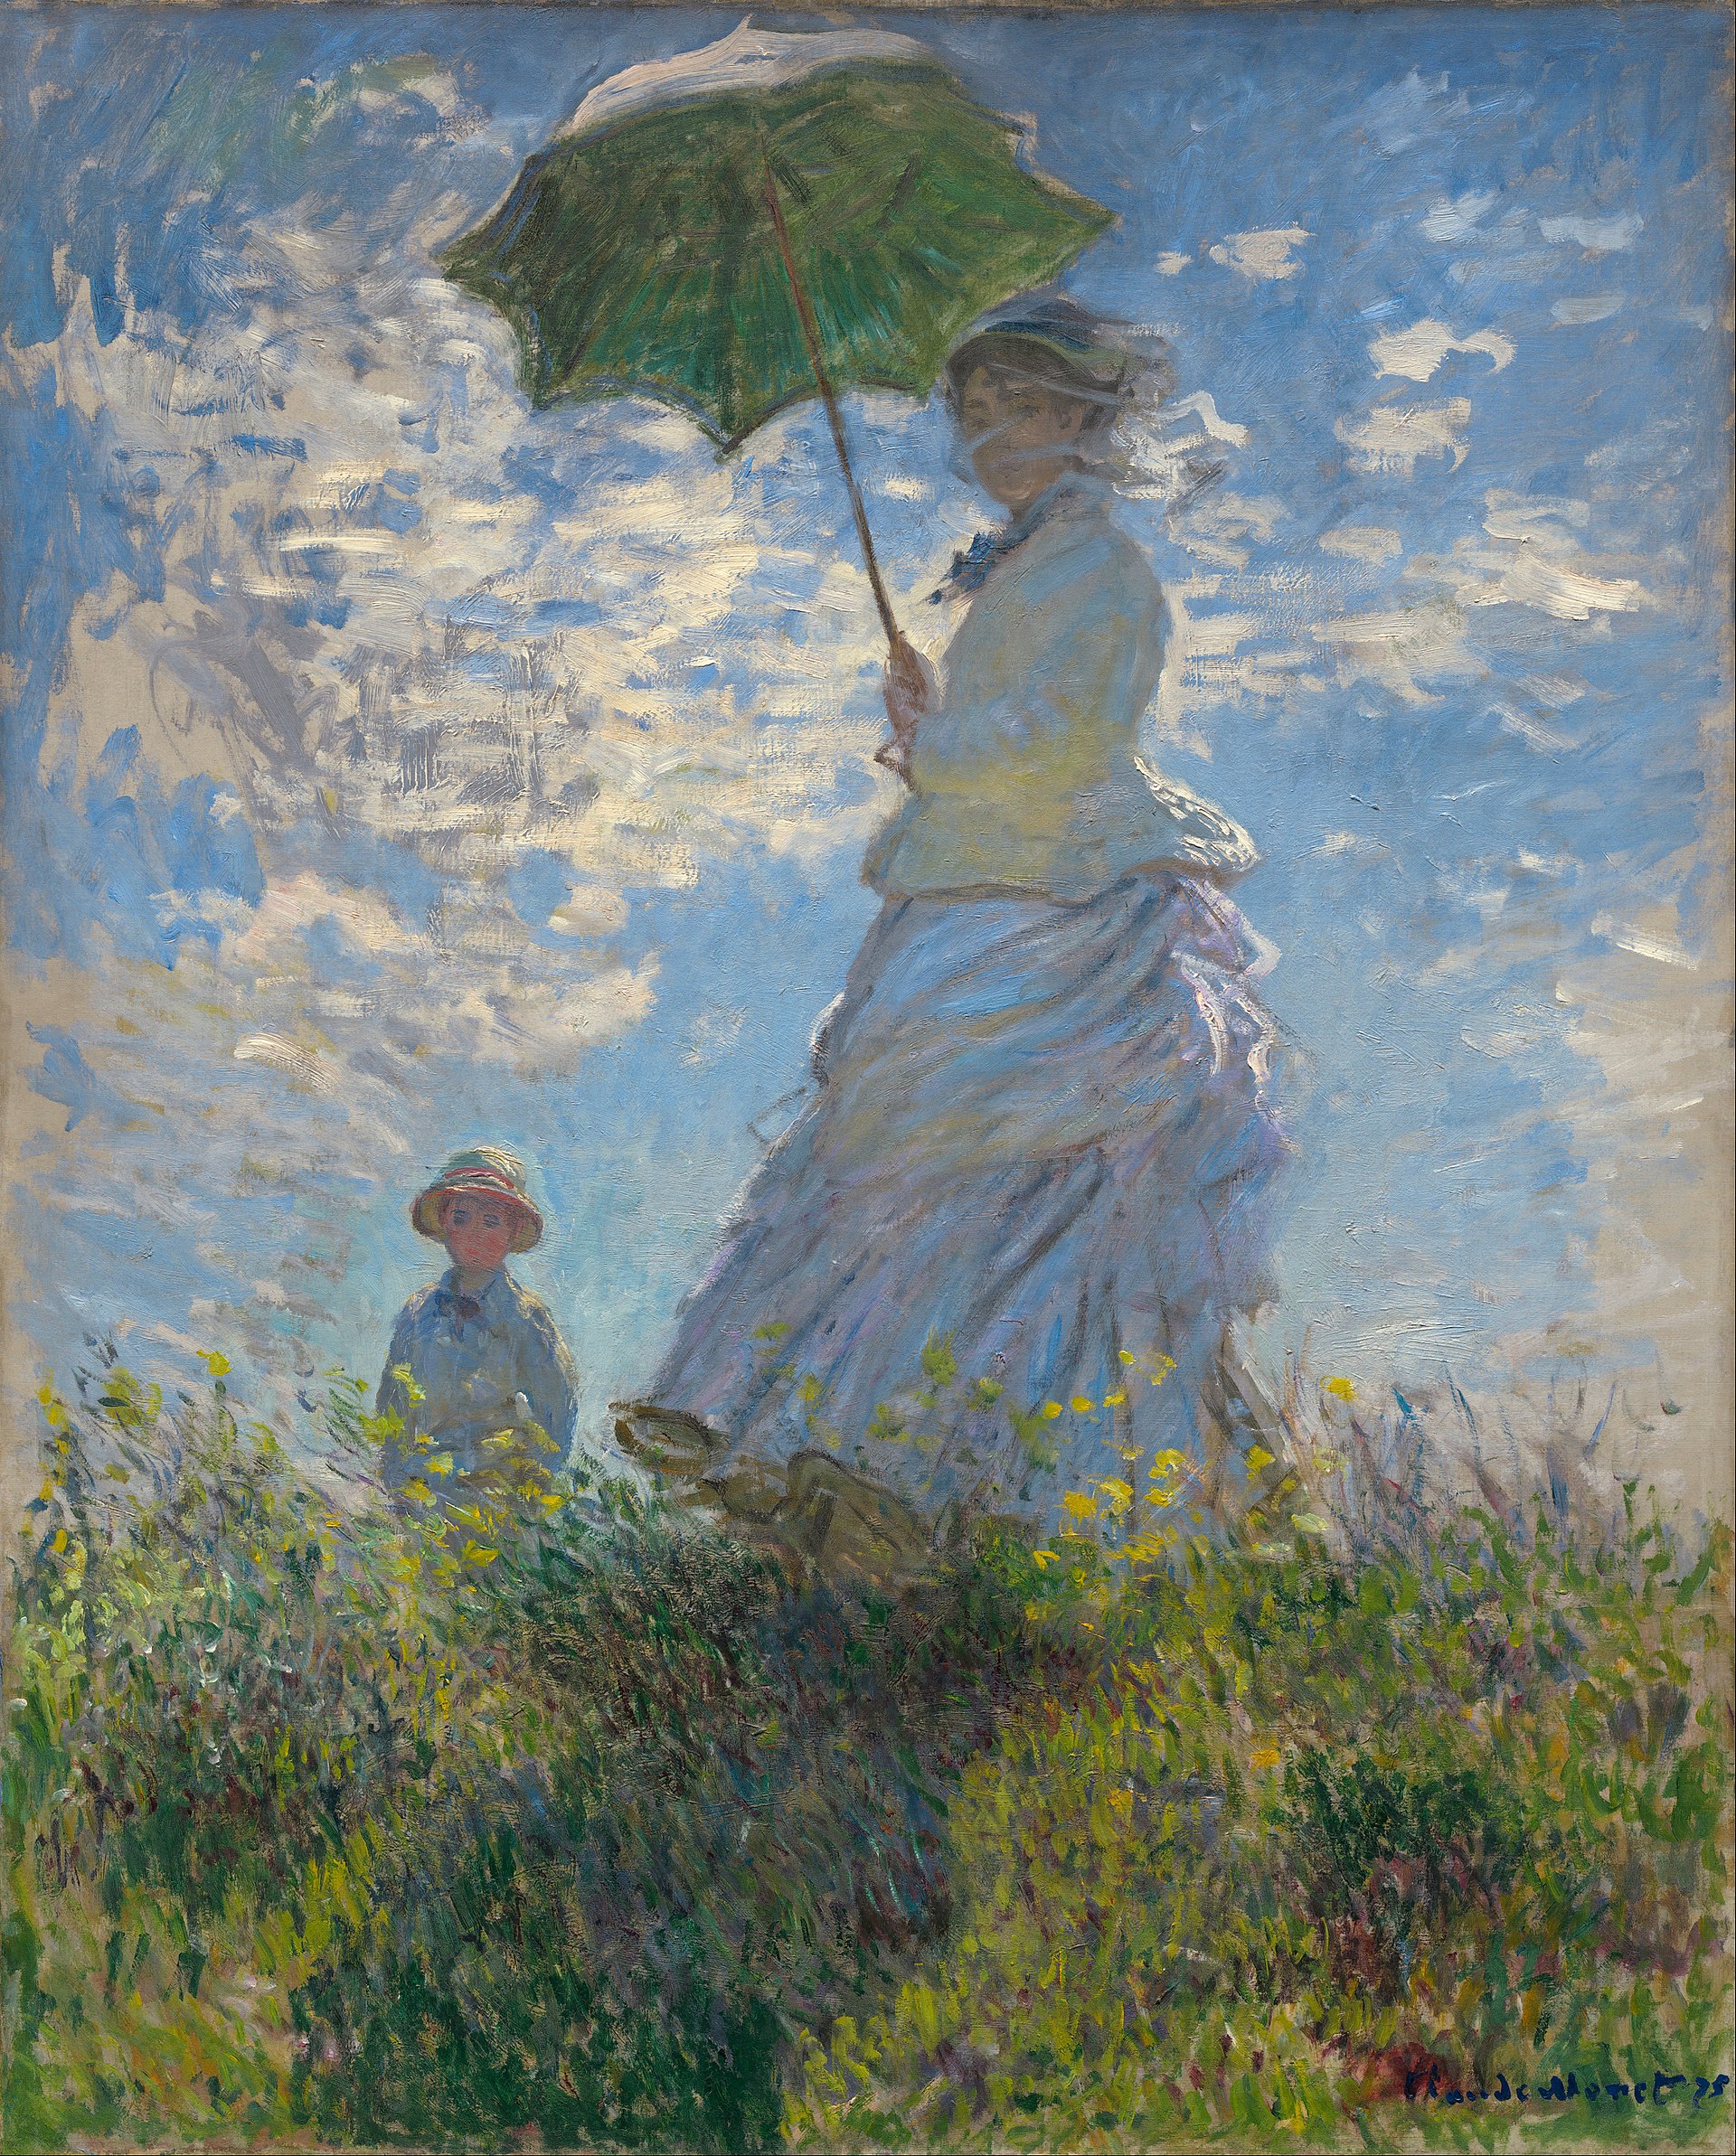 cuadro de Monet de una mujer con un niño que sostiene una sombrilla